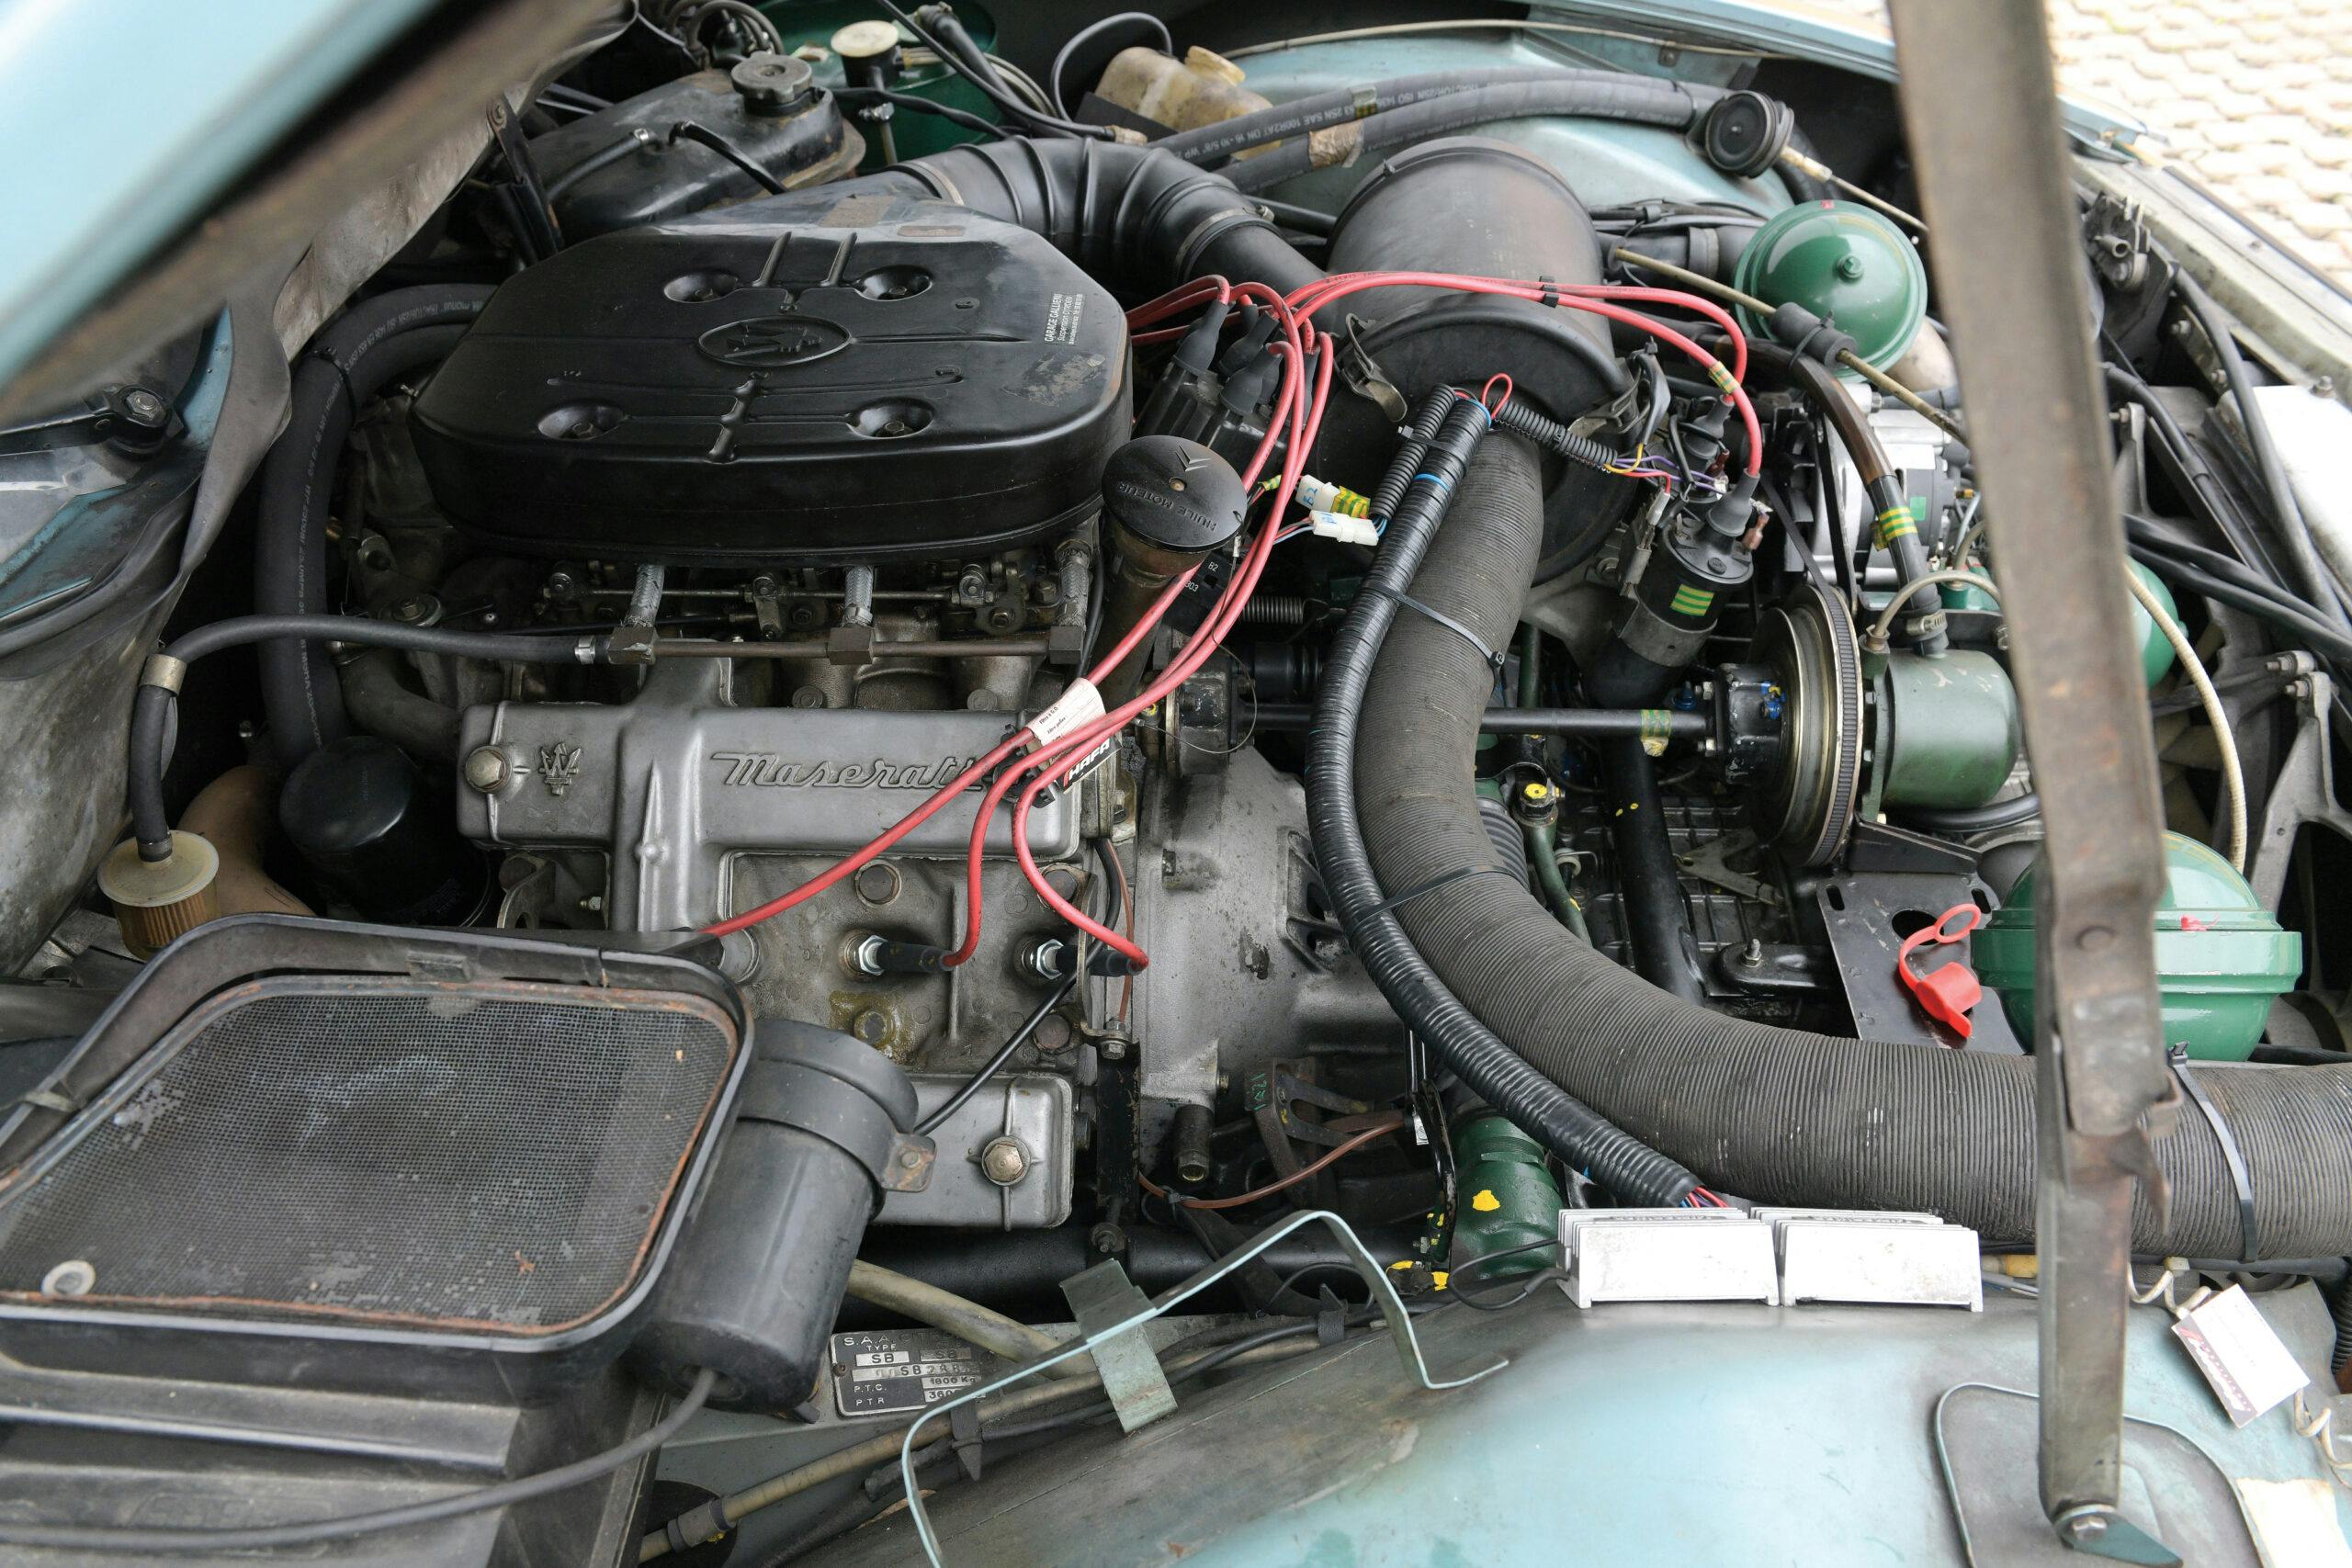 1971 Citroen SM engine side